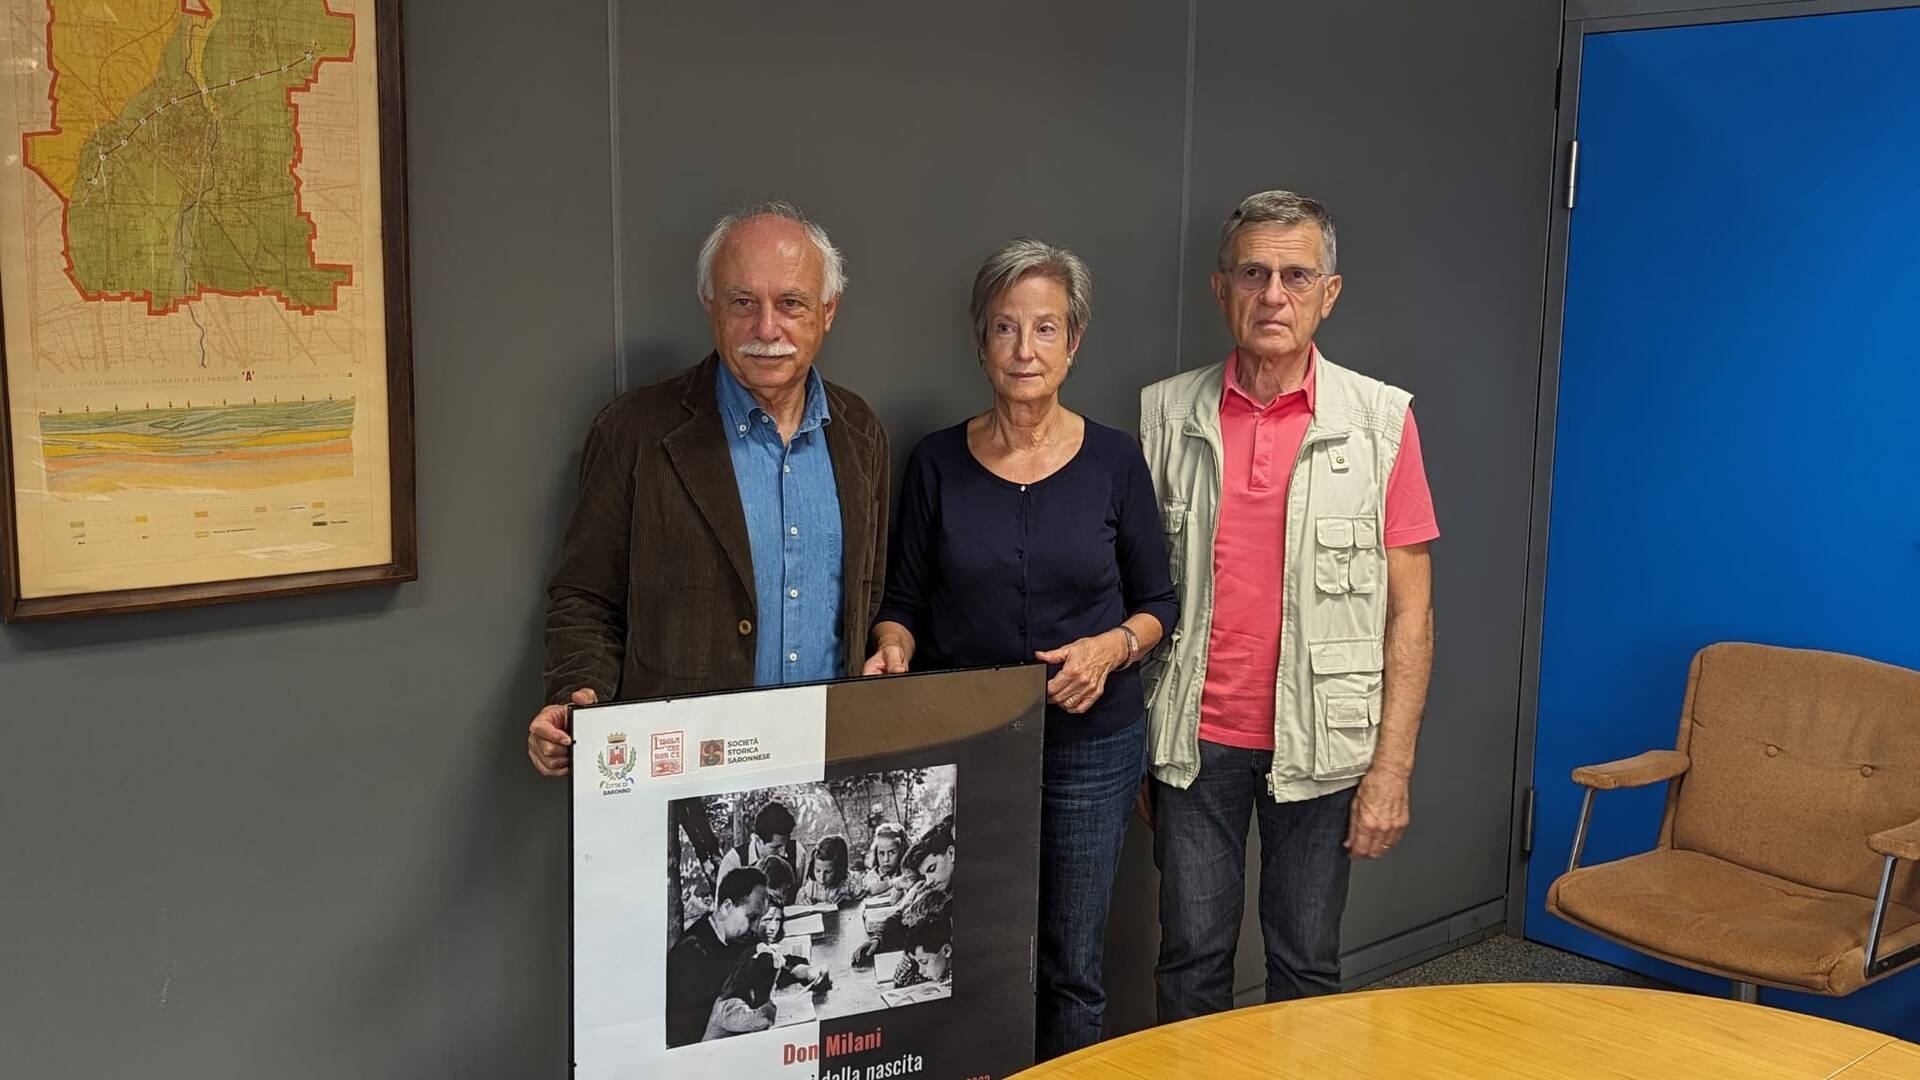 Saronno Civica racconta con Emiro Fresc “l’iniziativa vincente di portare con il docufilm don Milani e il suo messaggio alle scuole superiori”